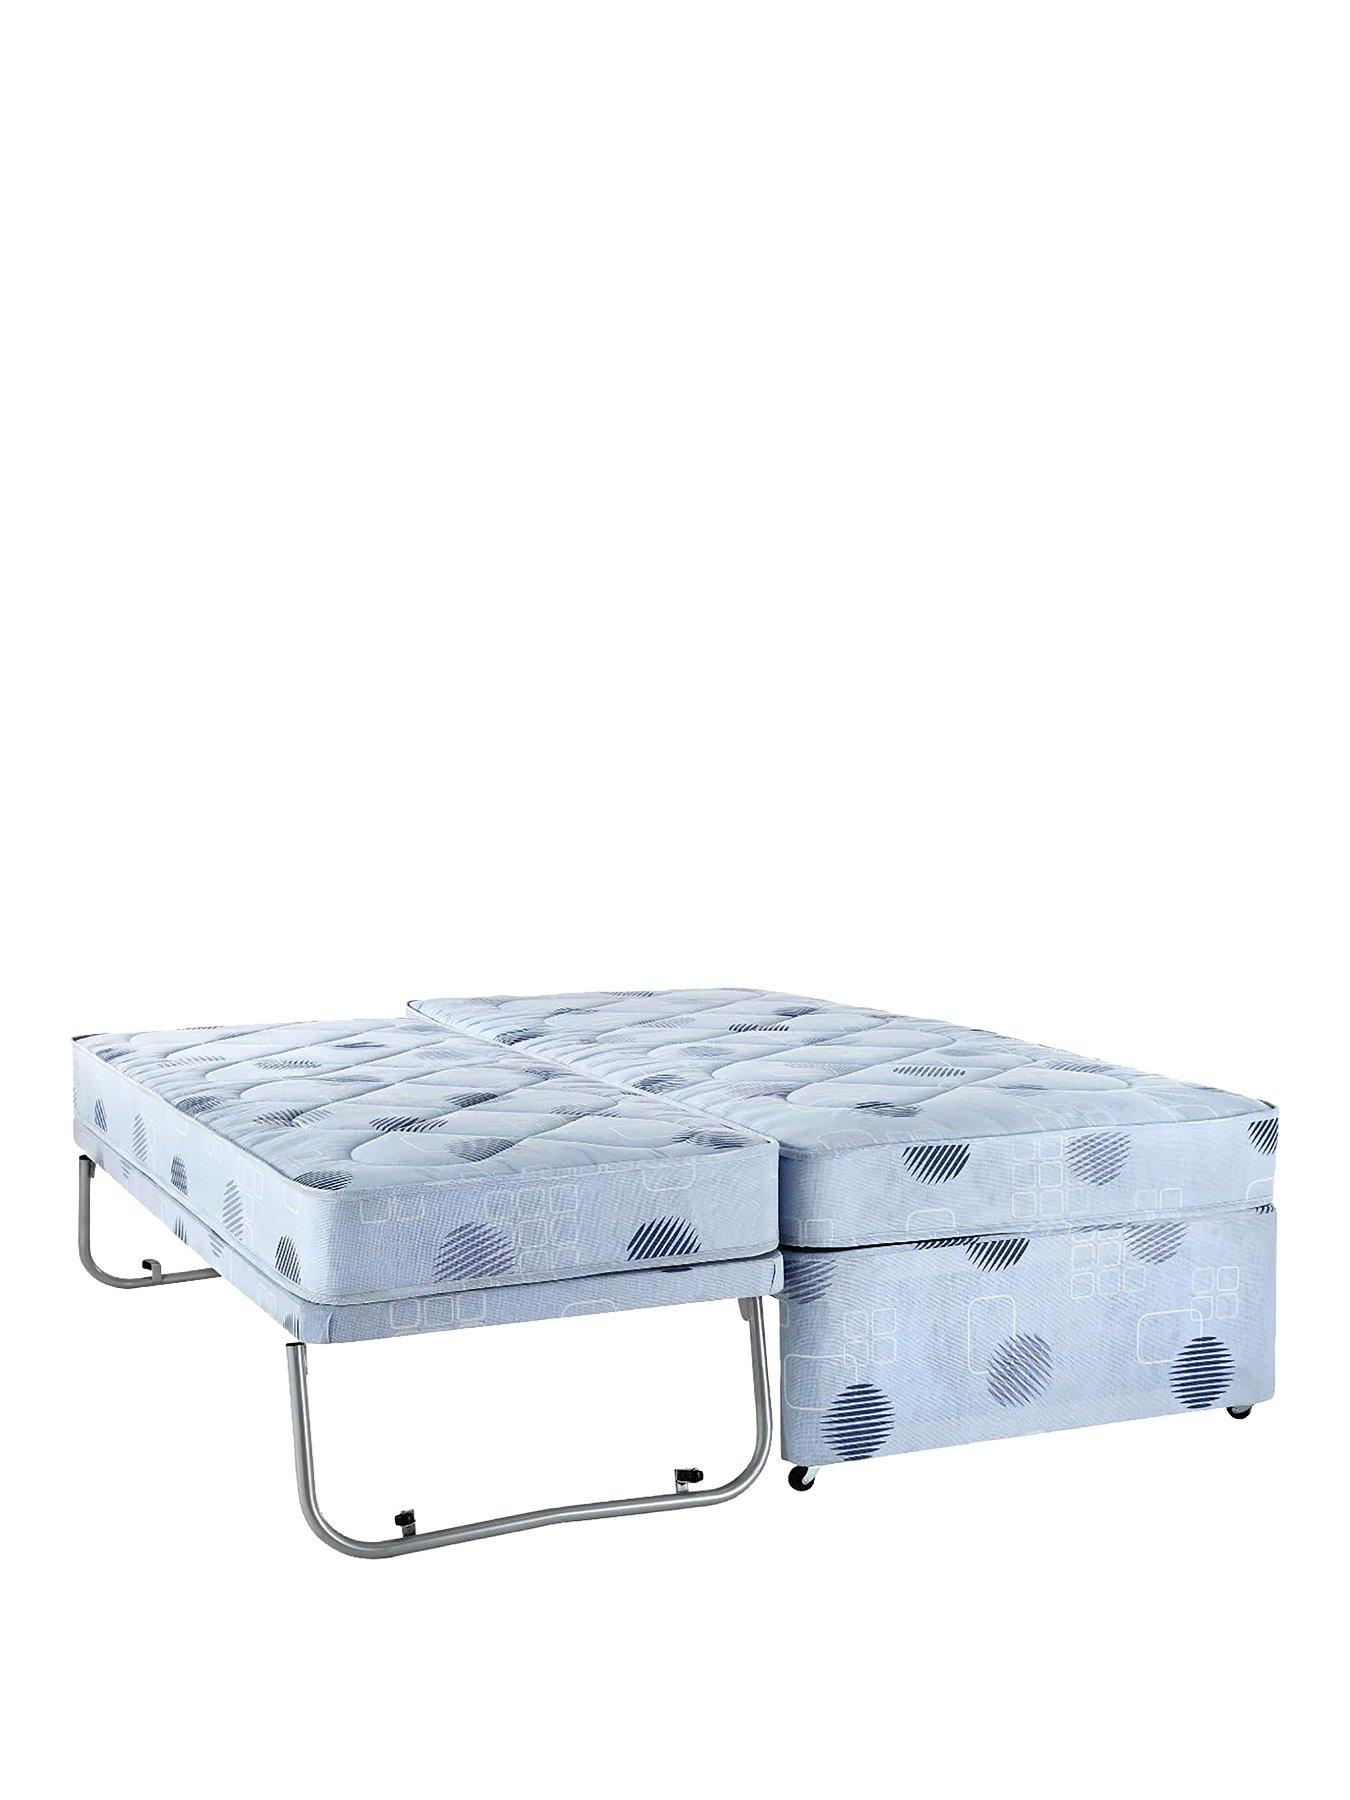 youth air mattress